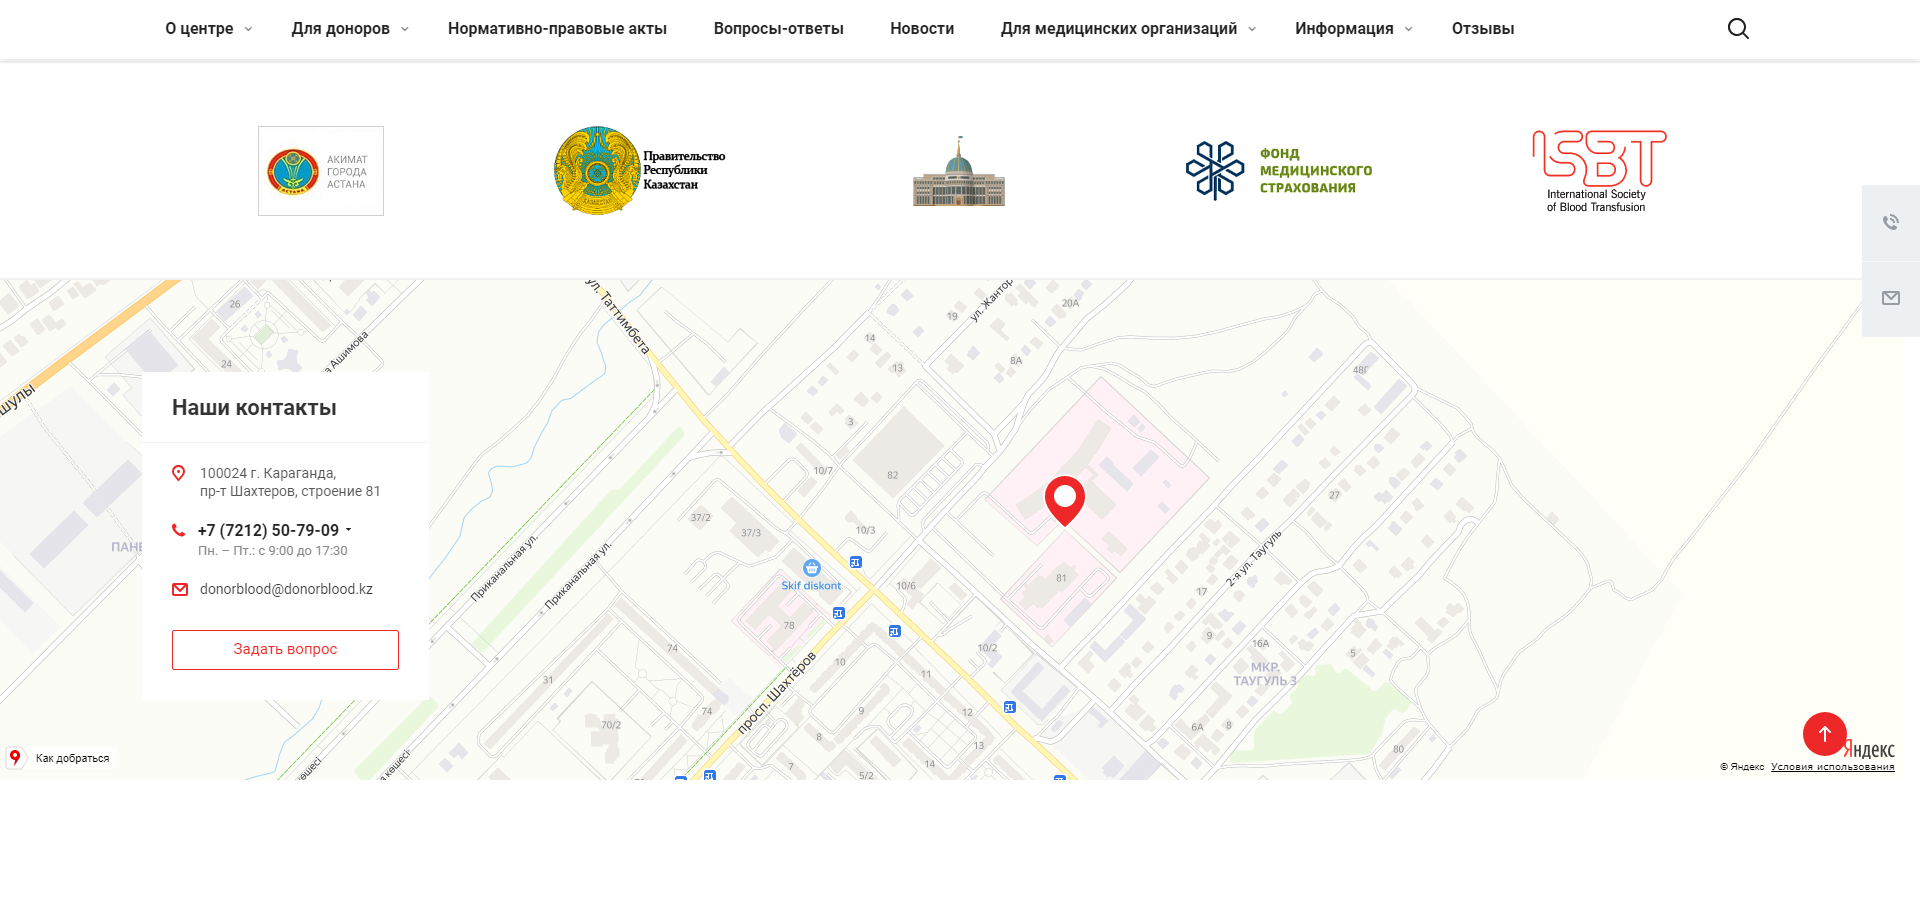 сайт областного центра крови карагандинской области